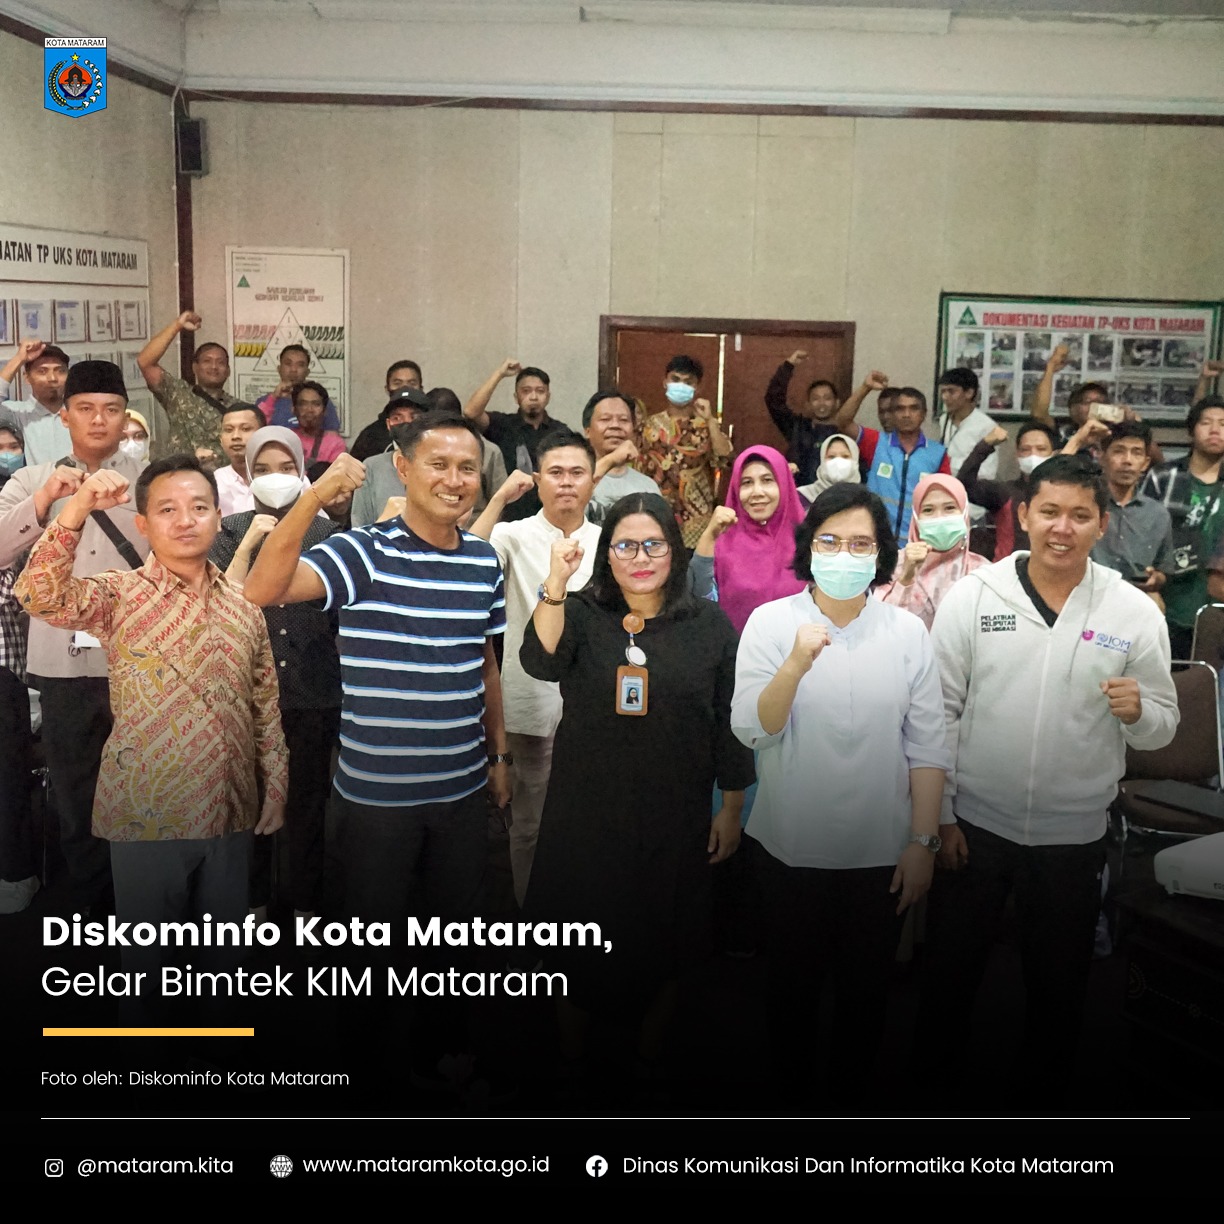 Diskominfo Kota Mataram, Gelar Bimtek KIM Mentaram